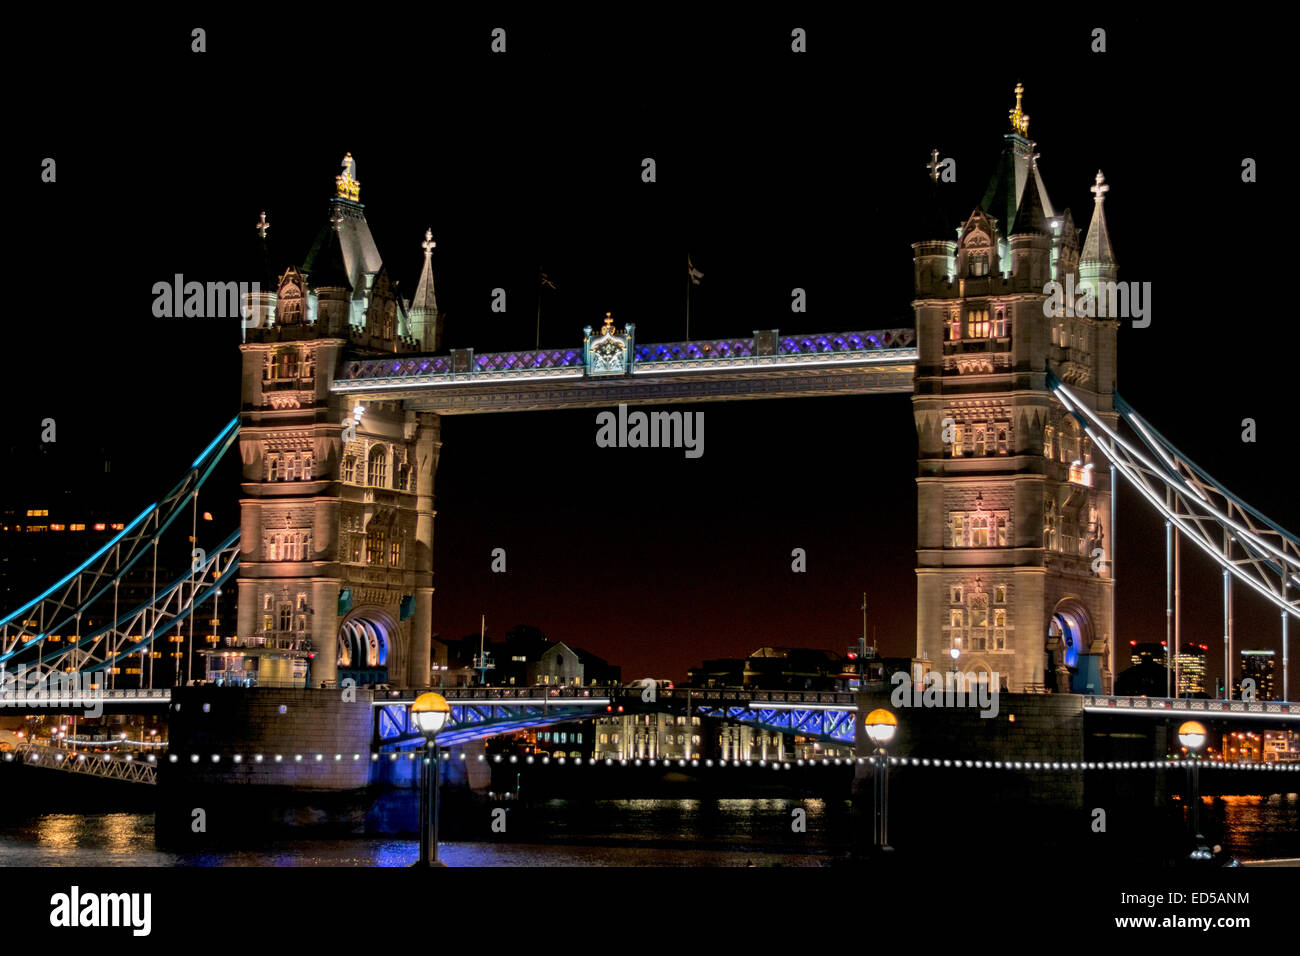 LONDON TOWER BRIDGE CON LUCI SU UNA SERATA inverni a Natale Foto Stock